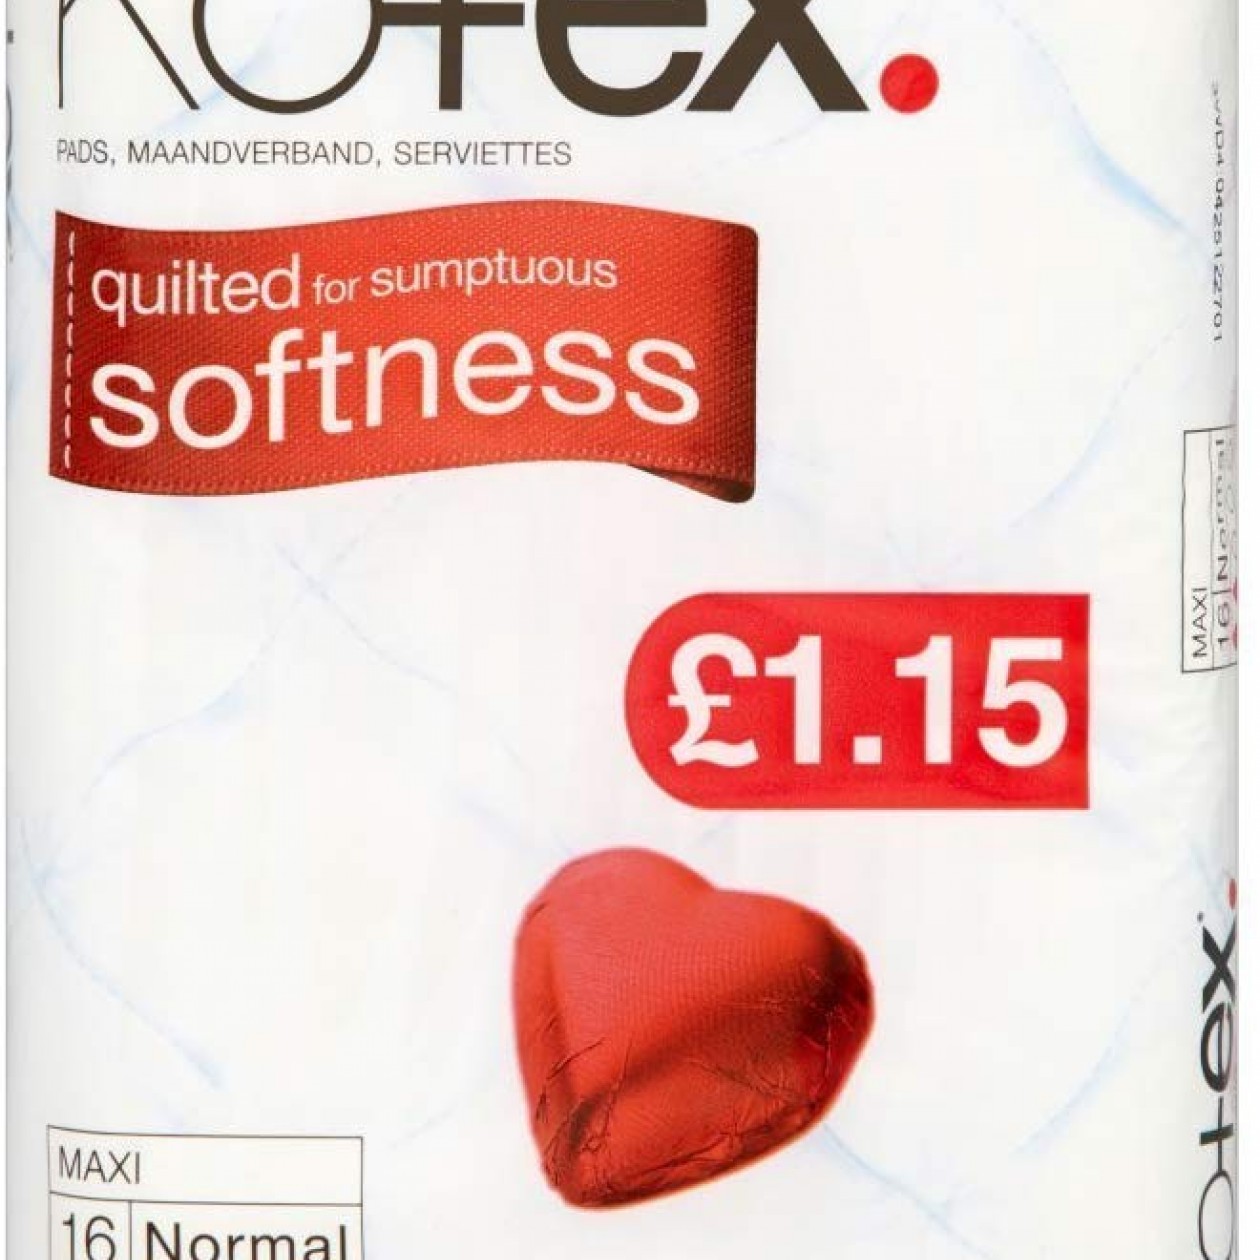 Kotex Maxi Super 14 Sanitary Towels (Pack of 12)